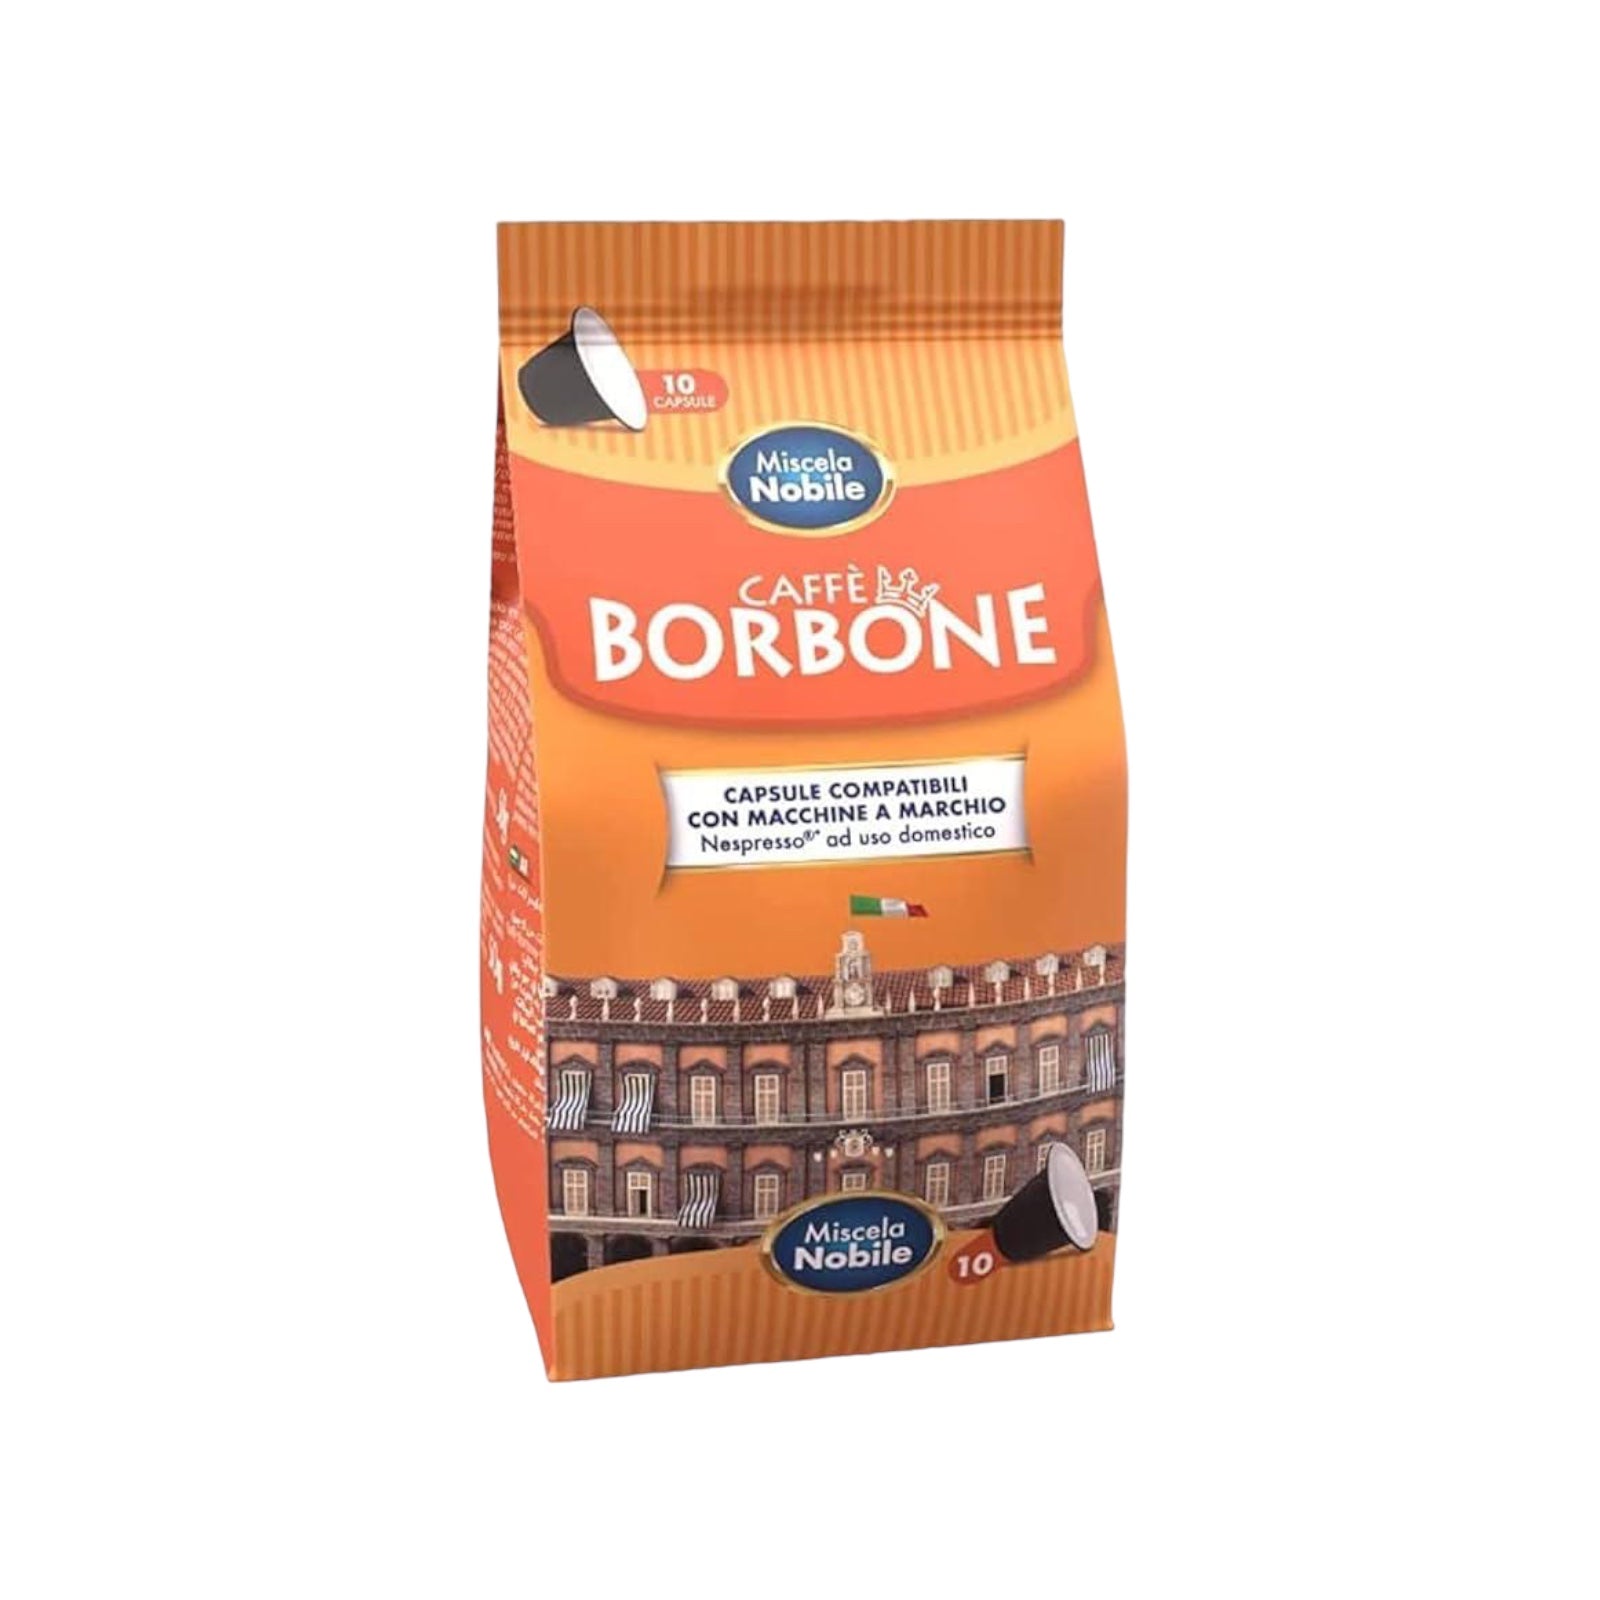 Whole Coffee Beans Caffè Borbone Nobile Blend 2.2lb